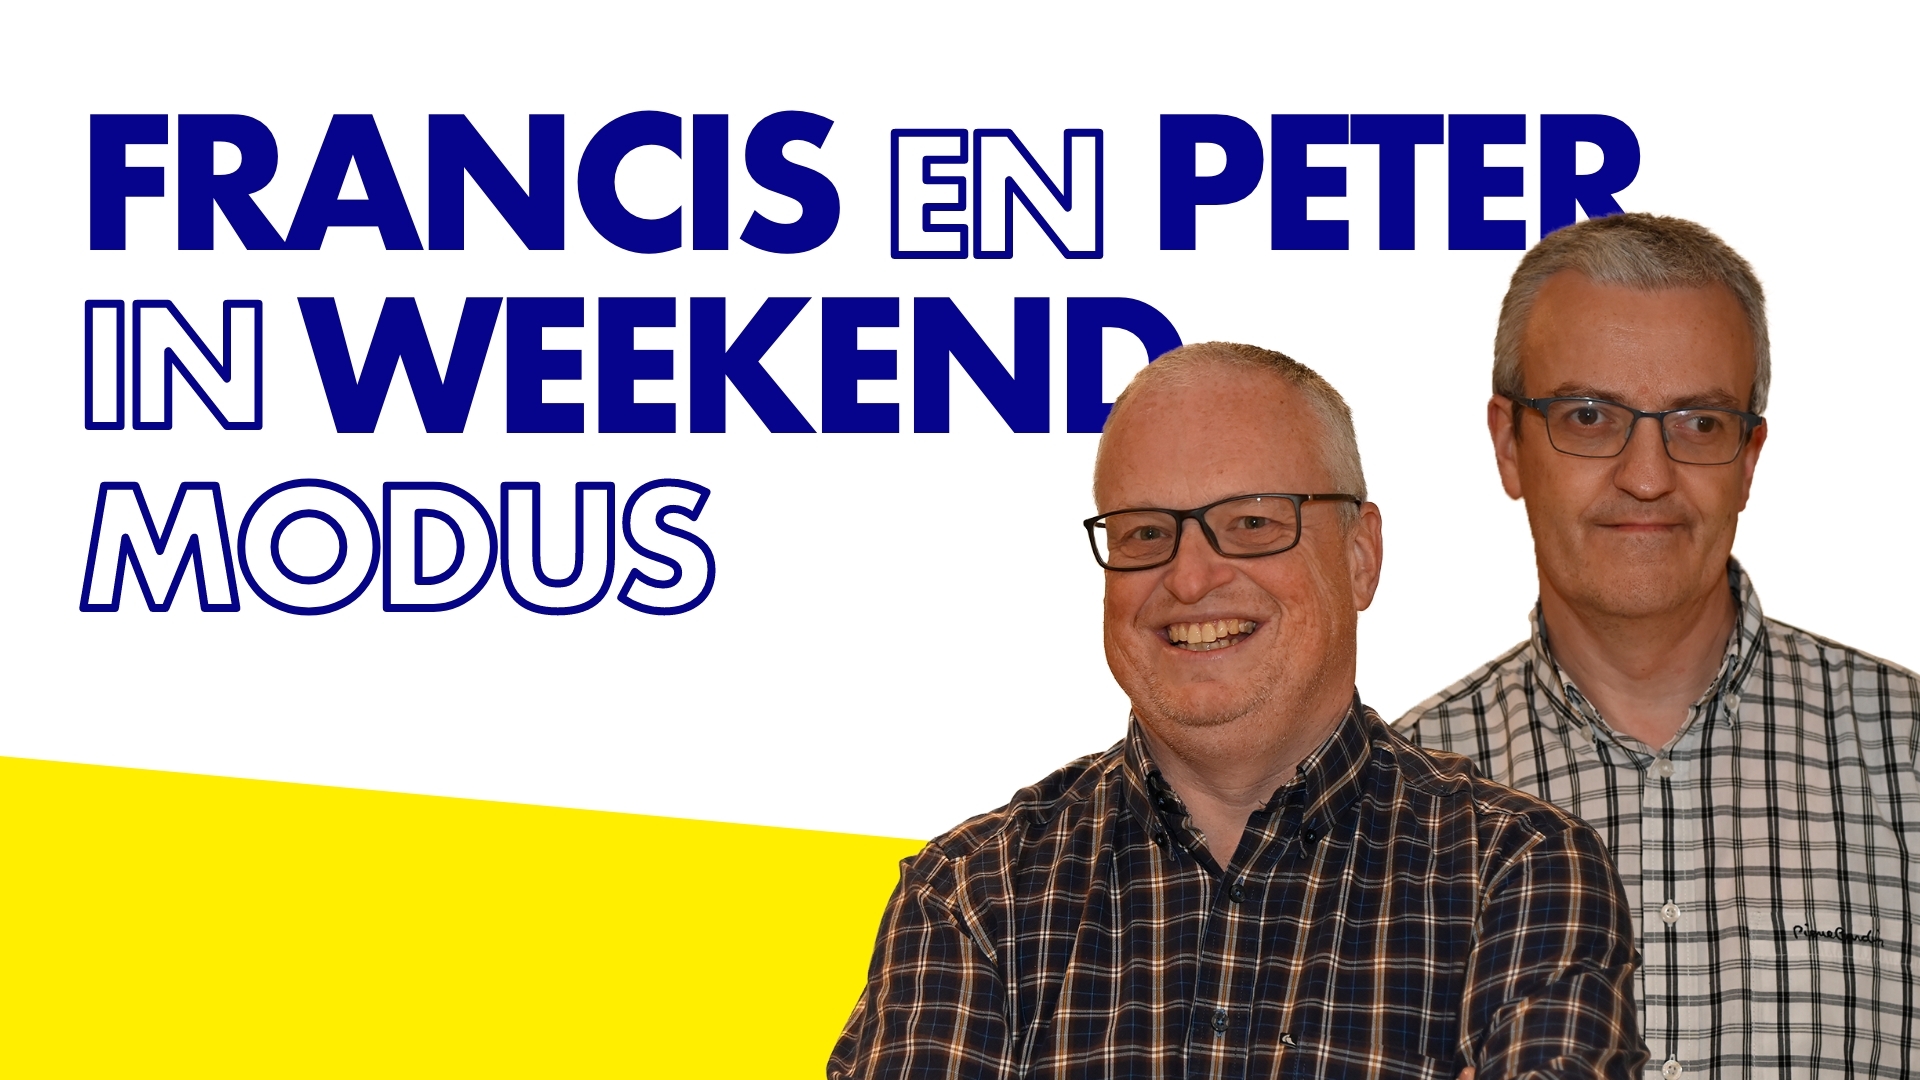 Francis en Peter in weekendmodus